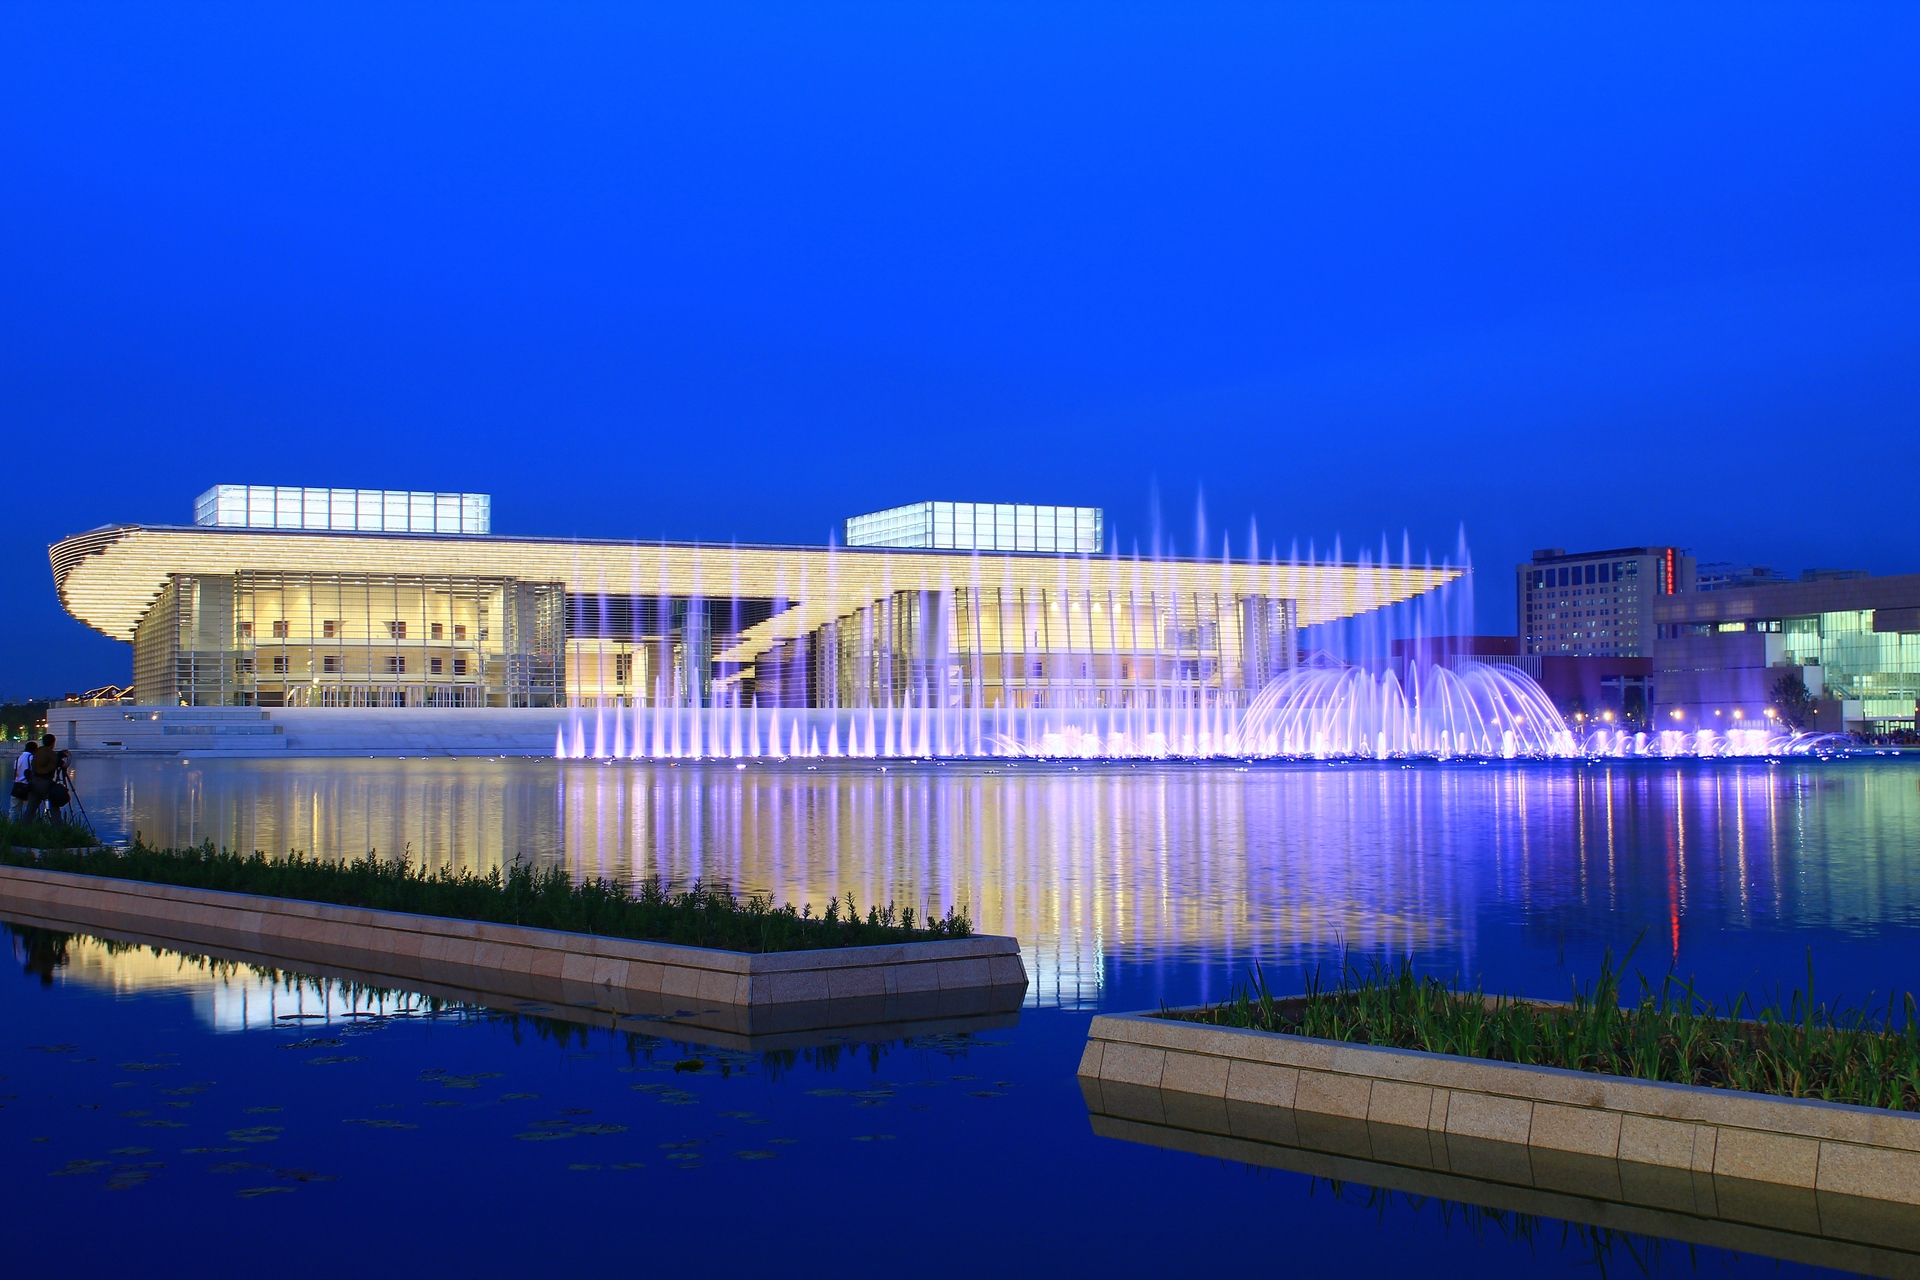 天津客厅文化中心夜景-音乐喷泉 之一